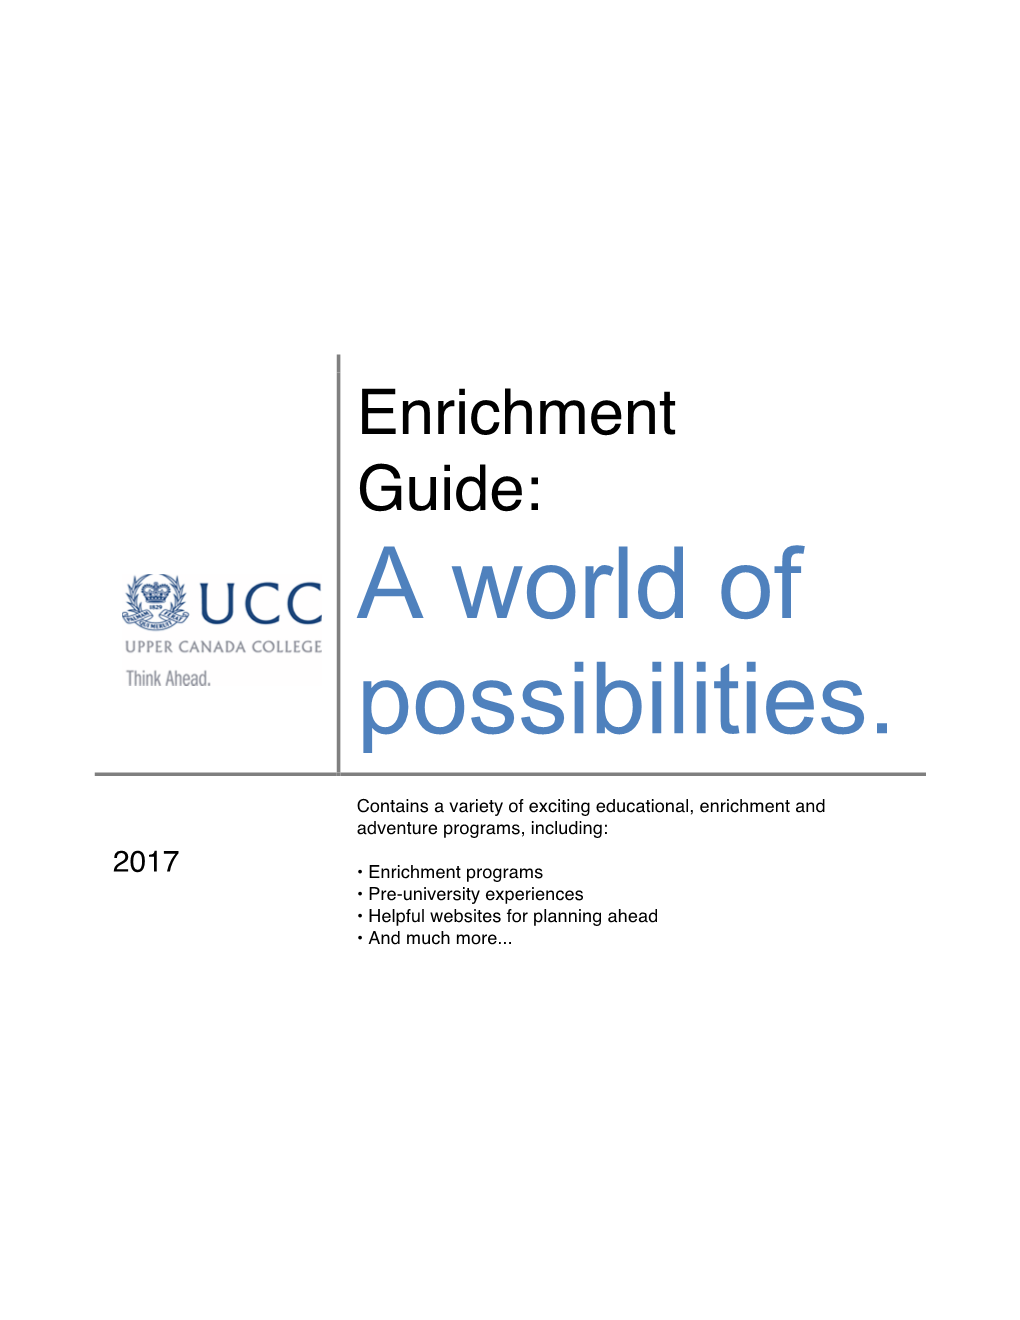 Enrichment Guide 2016-17